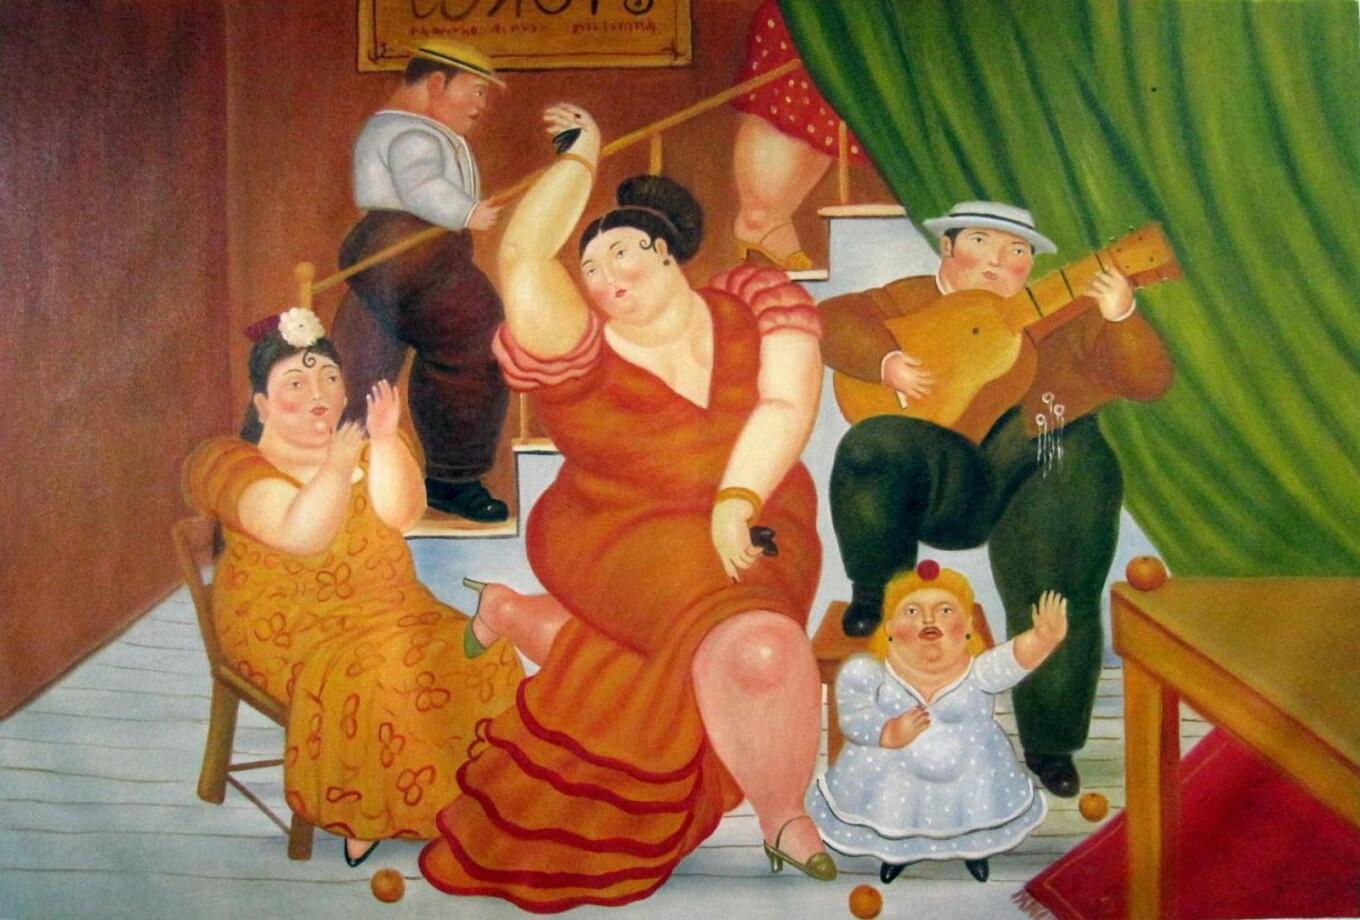 Πέθανε ο Κολομβιανός ζωγράφος και γλύπτης Φερνάντο Μποτέρο: Τα πληθωρικά  έργα του, η Ελληνίδα σύζυγος και το ησυχαστήριο στην Εύβοια | Marie Claire  | Ό,τι έχει σημασία για τις γυναίκες